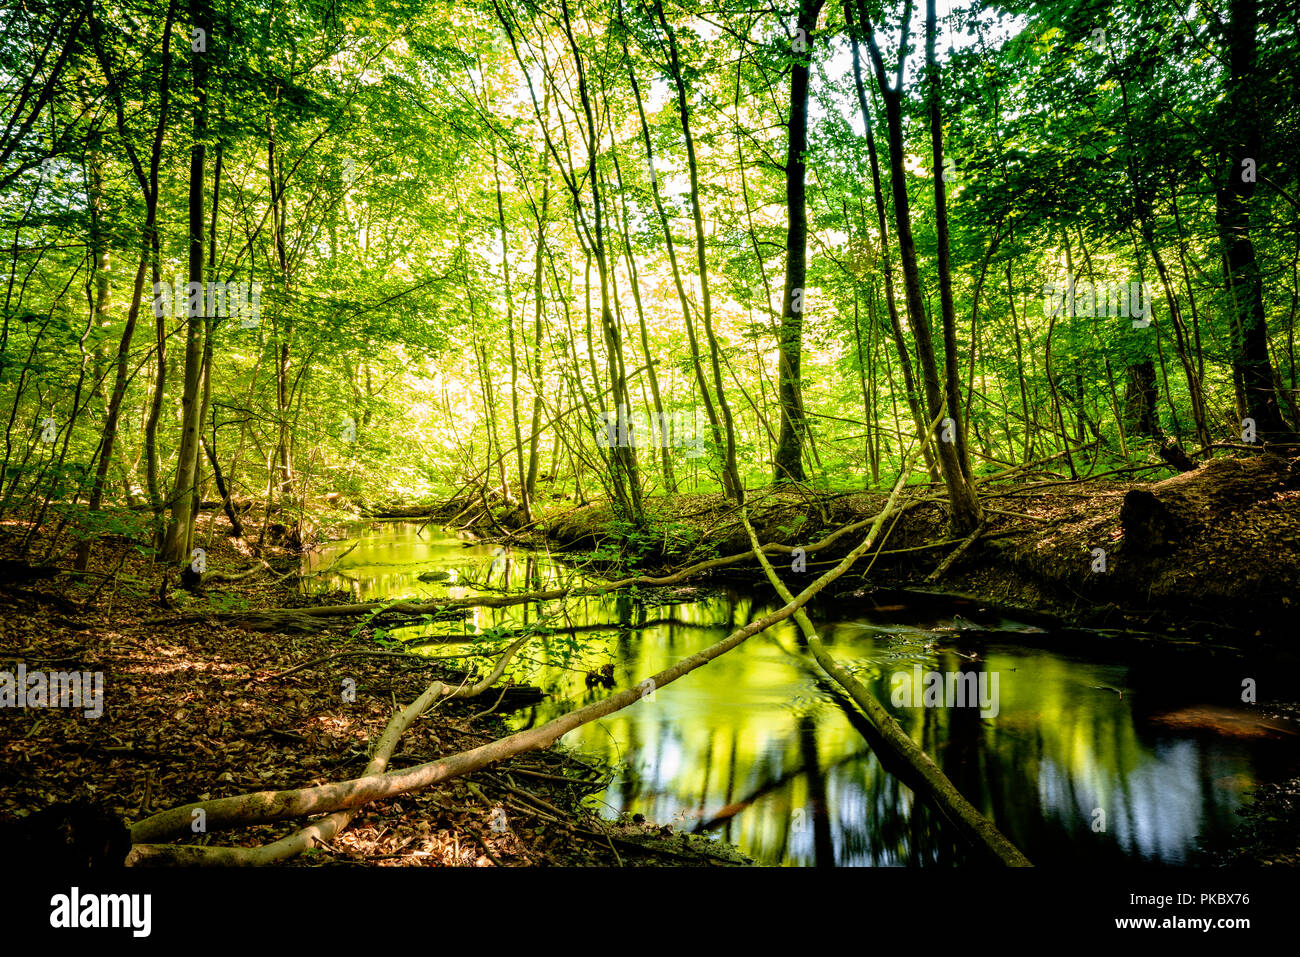 Ruhigen Fluss in einem grünen Wald mit Spiegelungen der Bäume und Farben Stockfoto